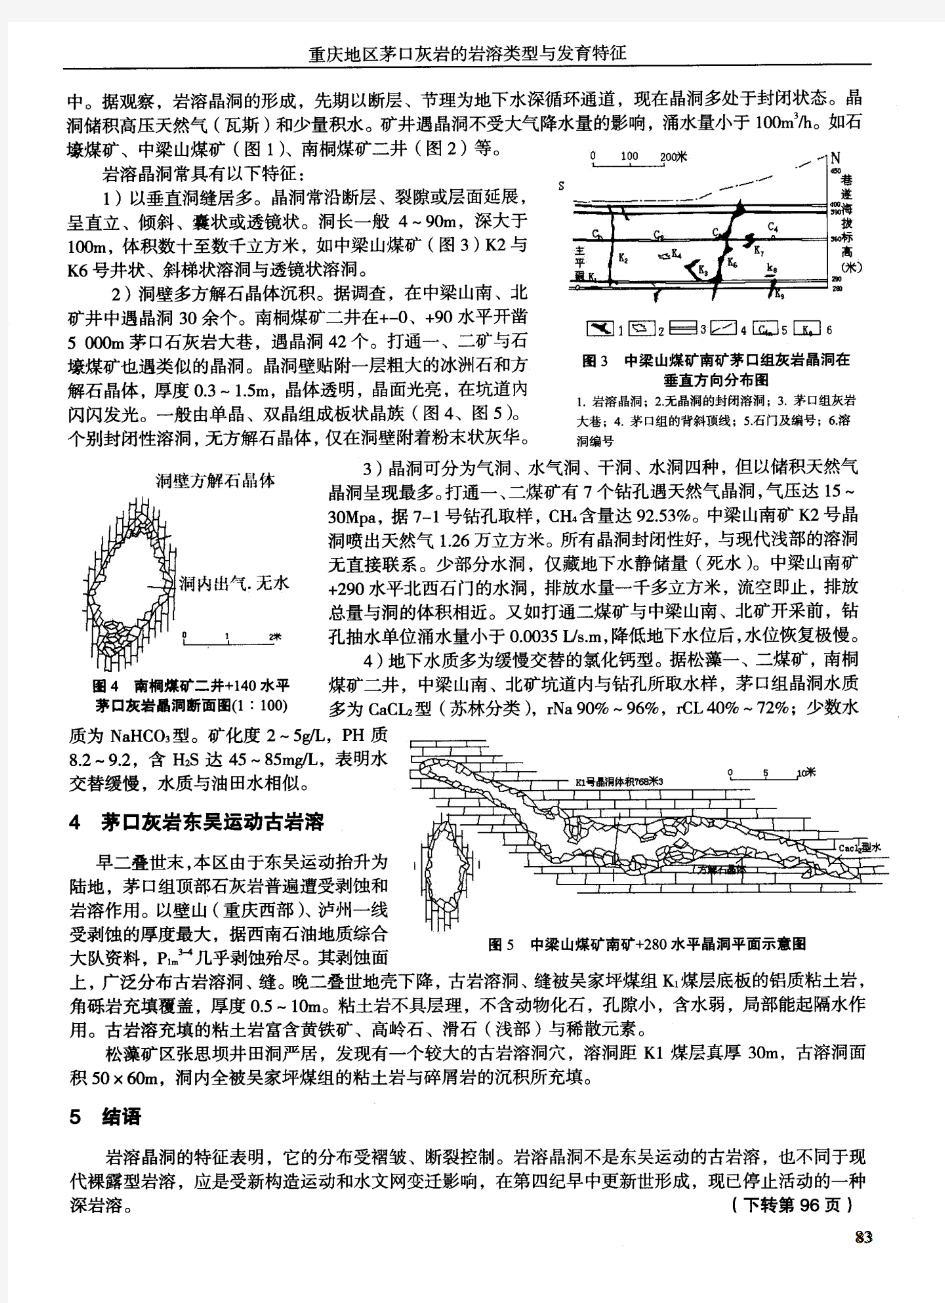 重庆地区茅口灰岩的岩溶类型与发育特征